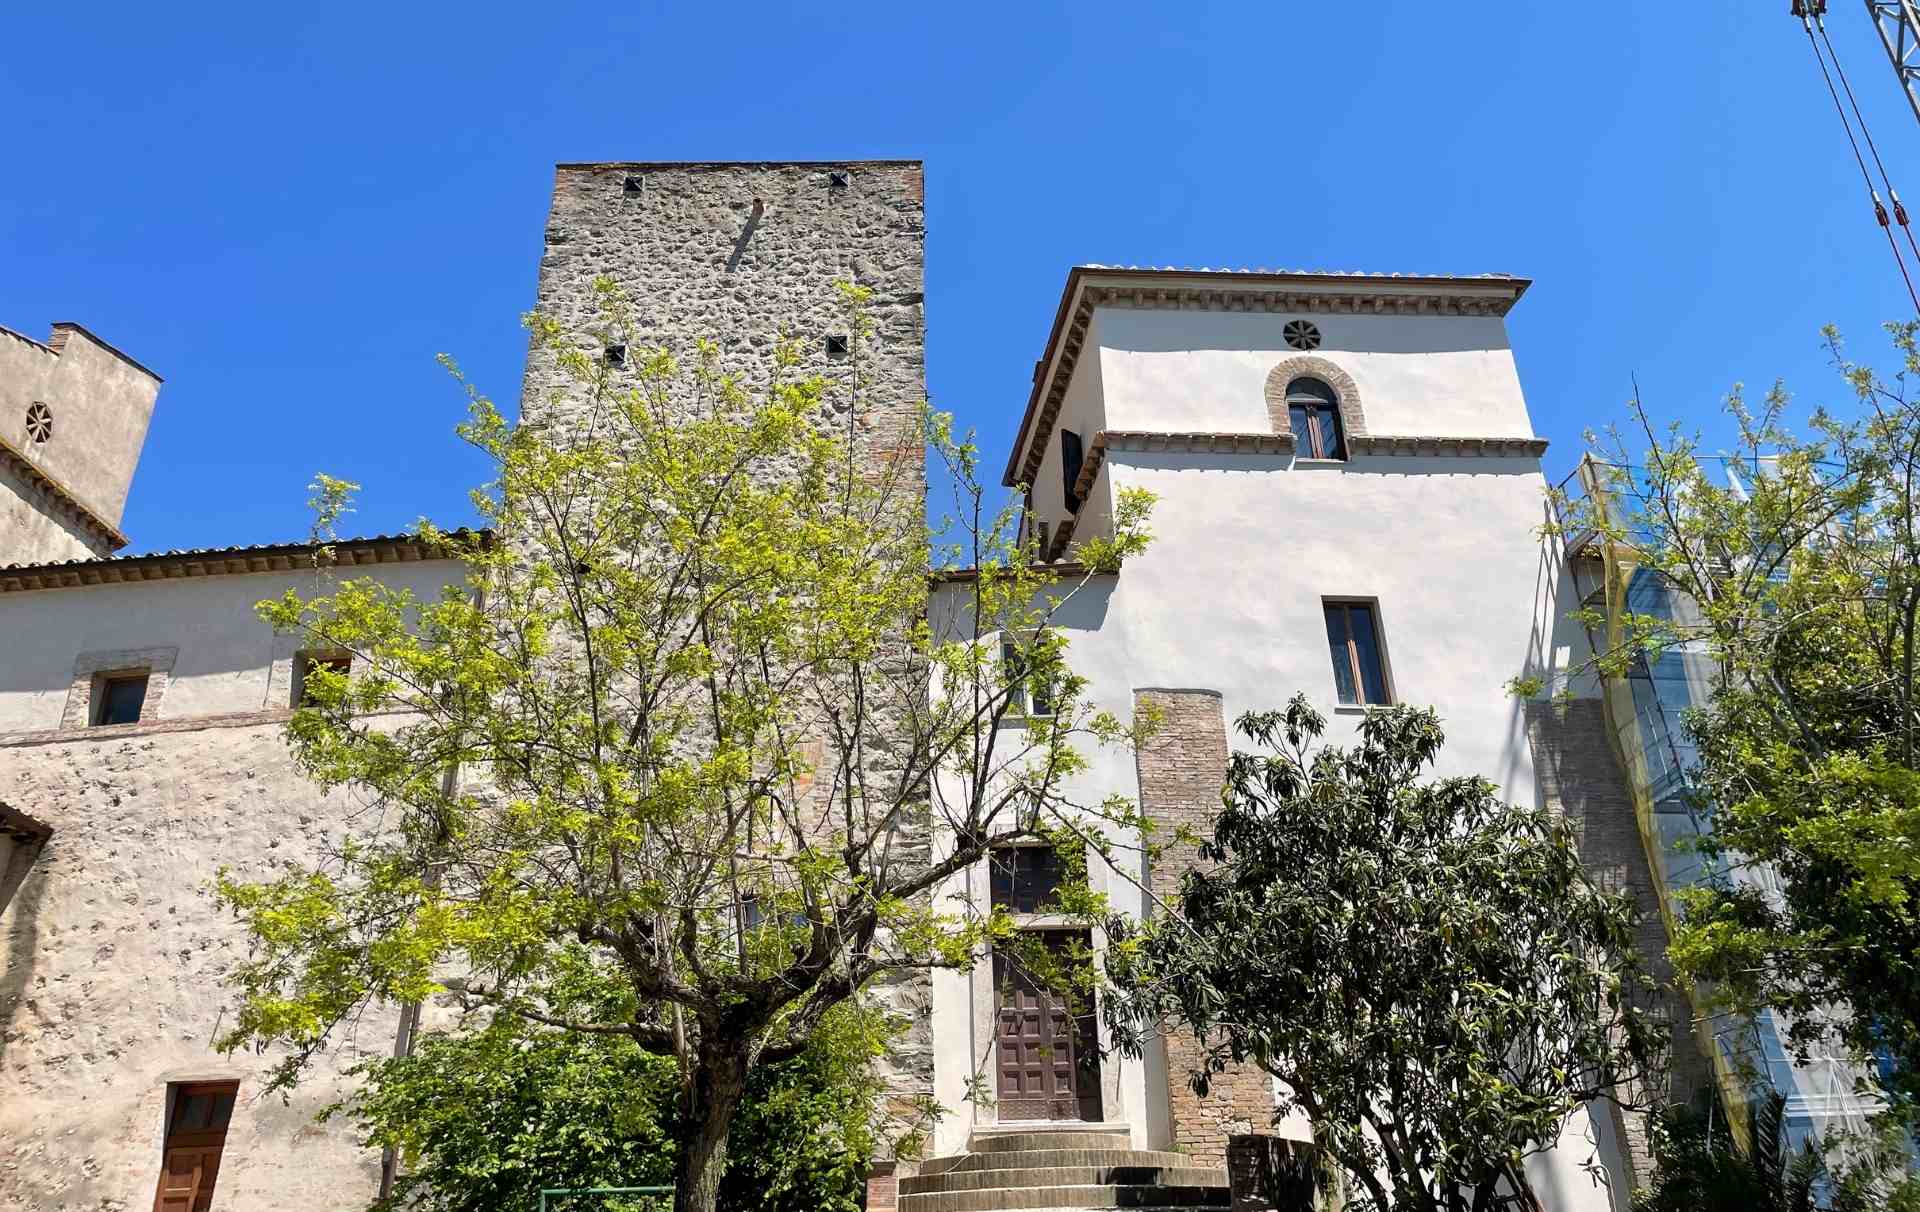 Il Palazzo di Guadamello, complesso creato attraverso l'accorpamento di diverse case torre